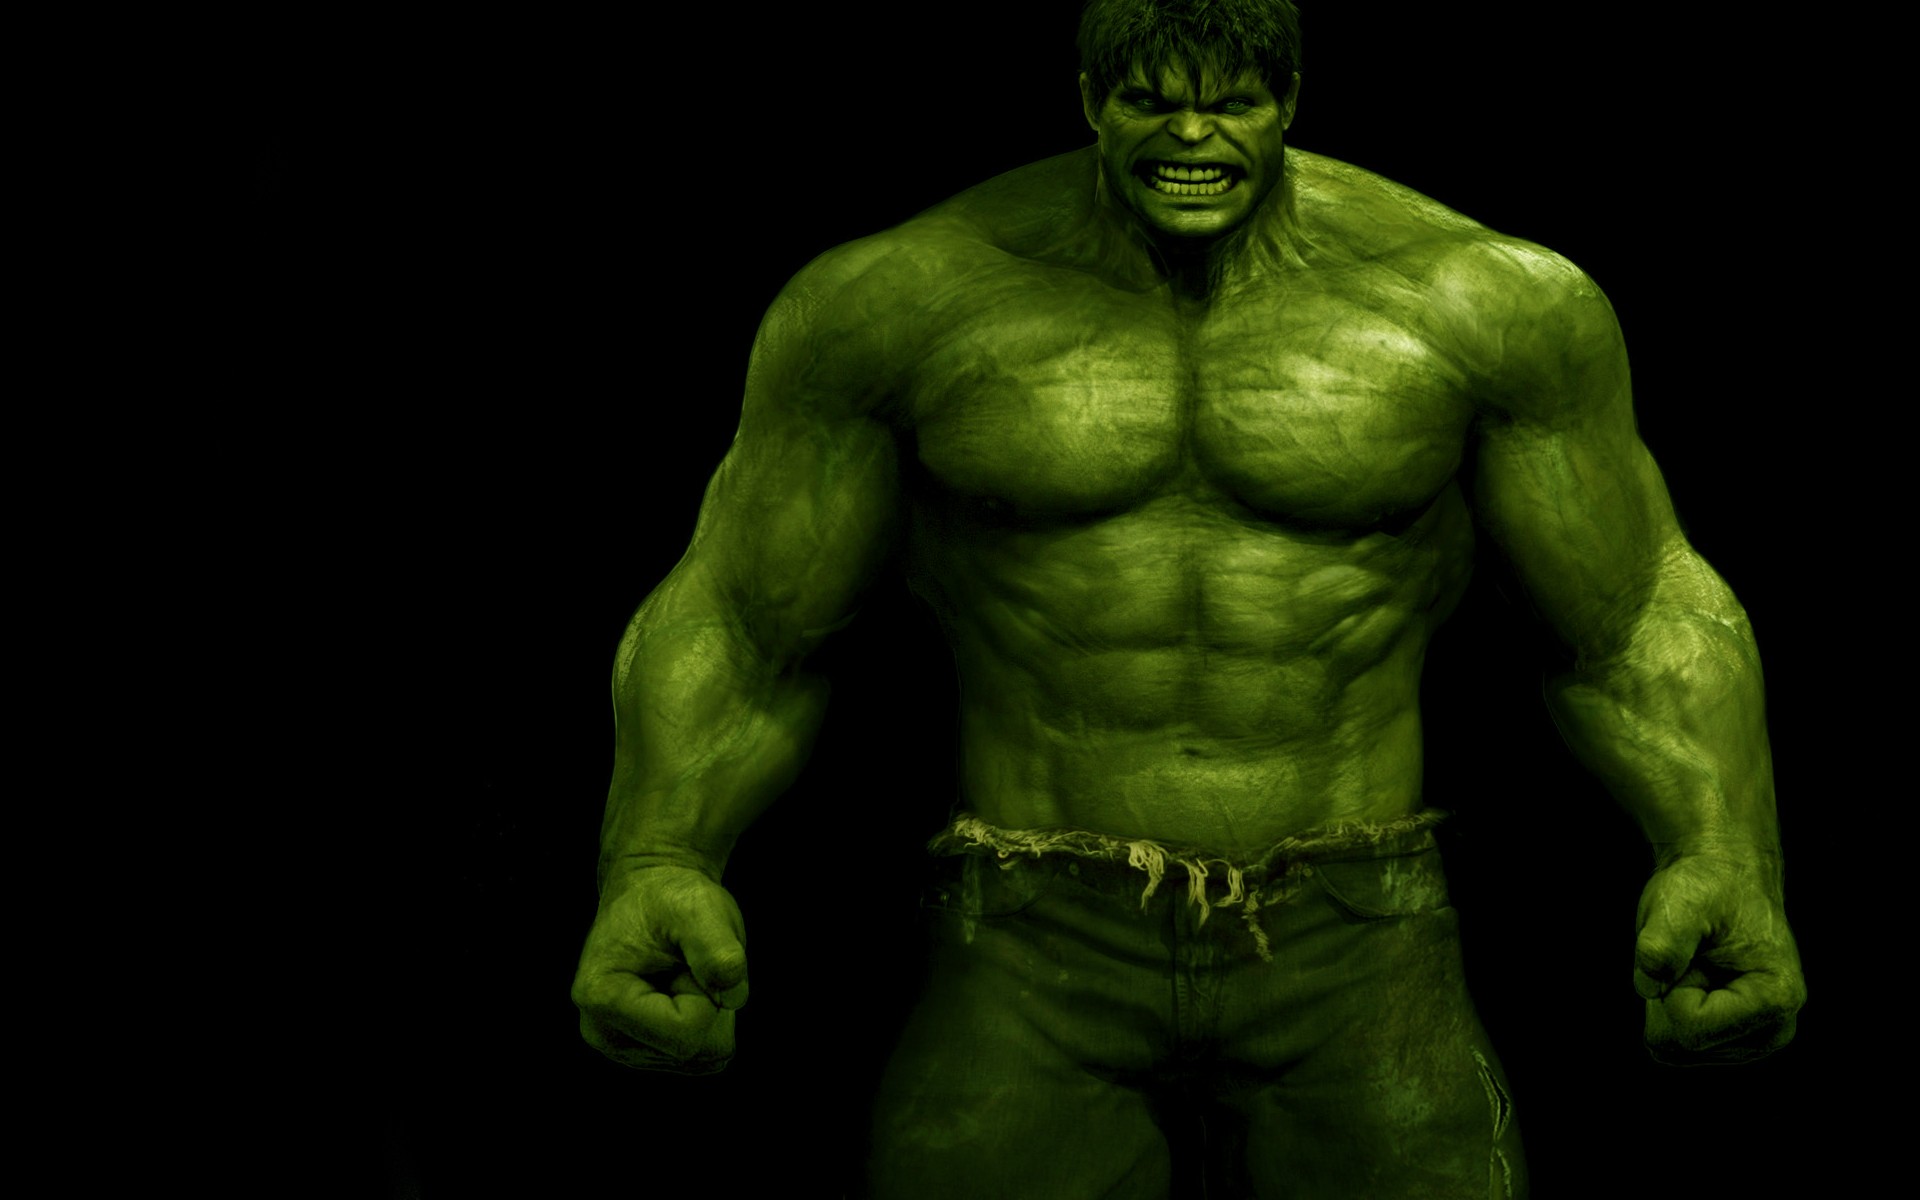 hulk wallpaper 4k for android #hulk#avengers#viral#short - YouTube